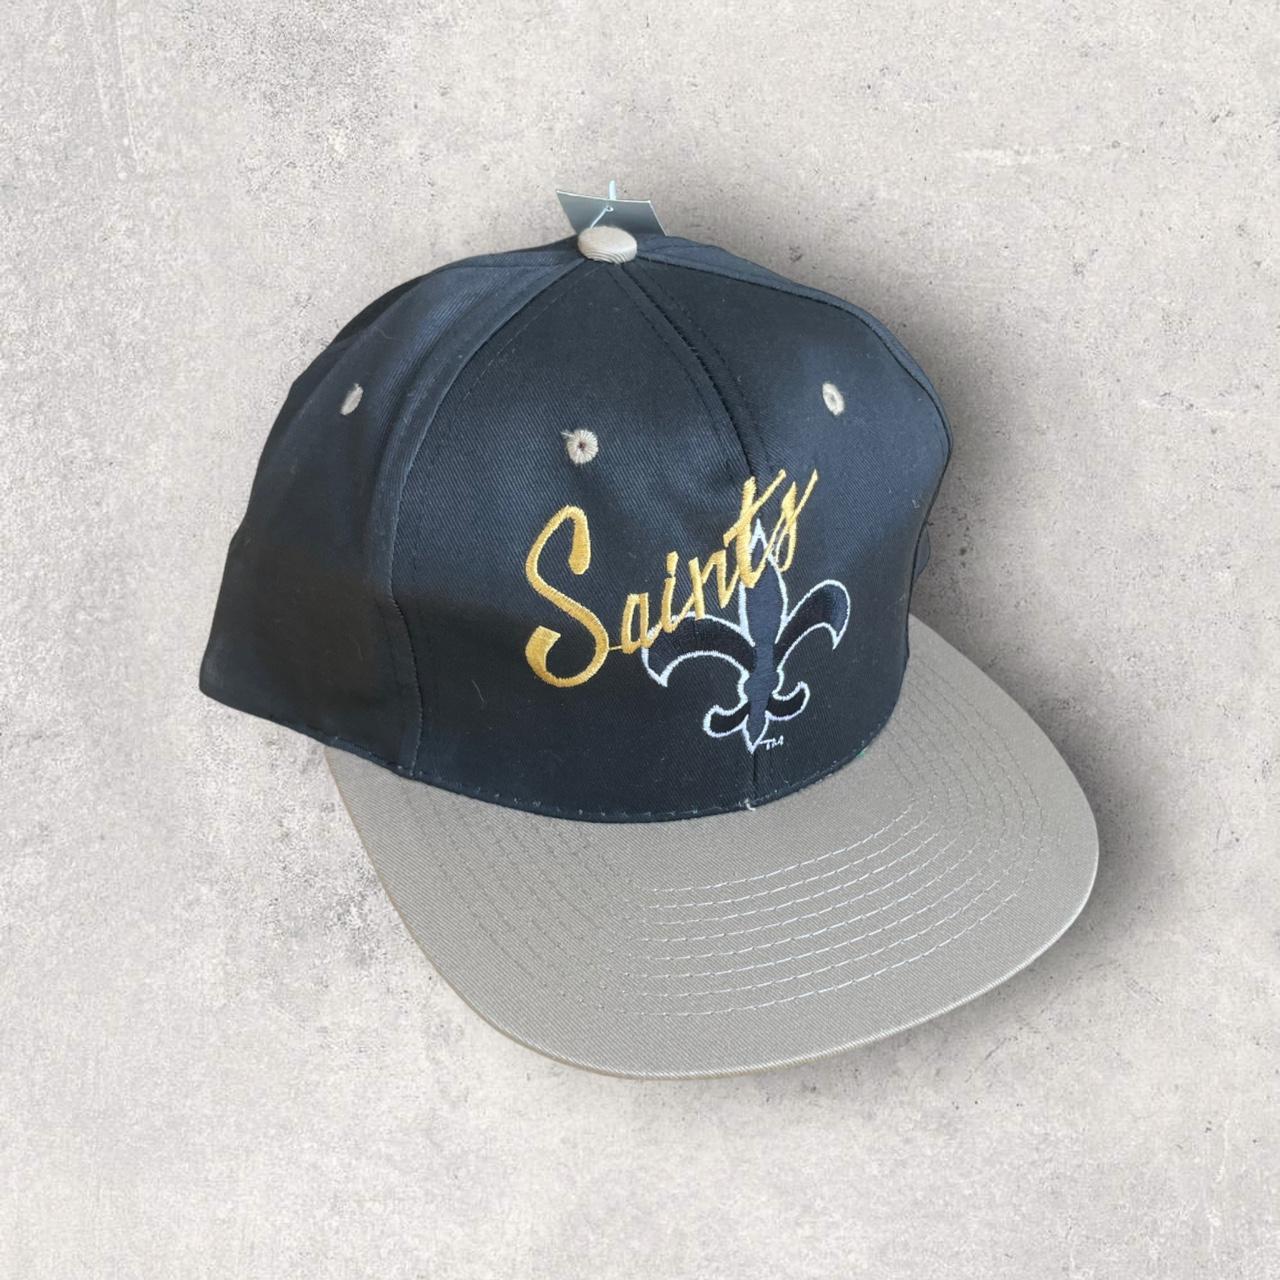 new orleans saints snapback hat